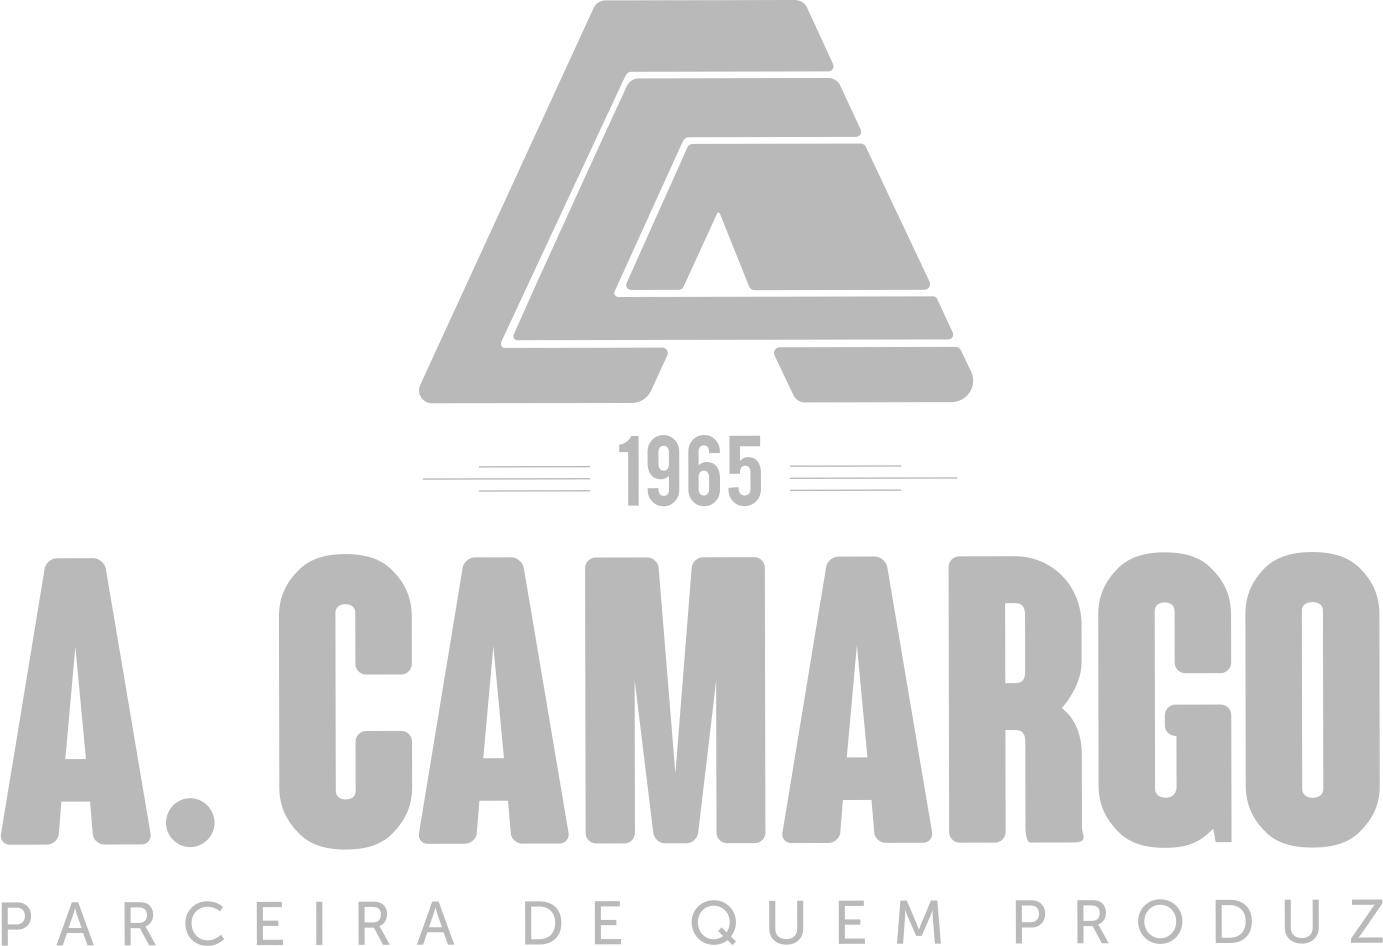 ALAVANCA DO COMANDO RACINE 001021